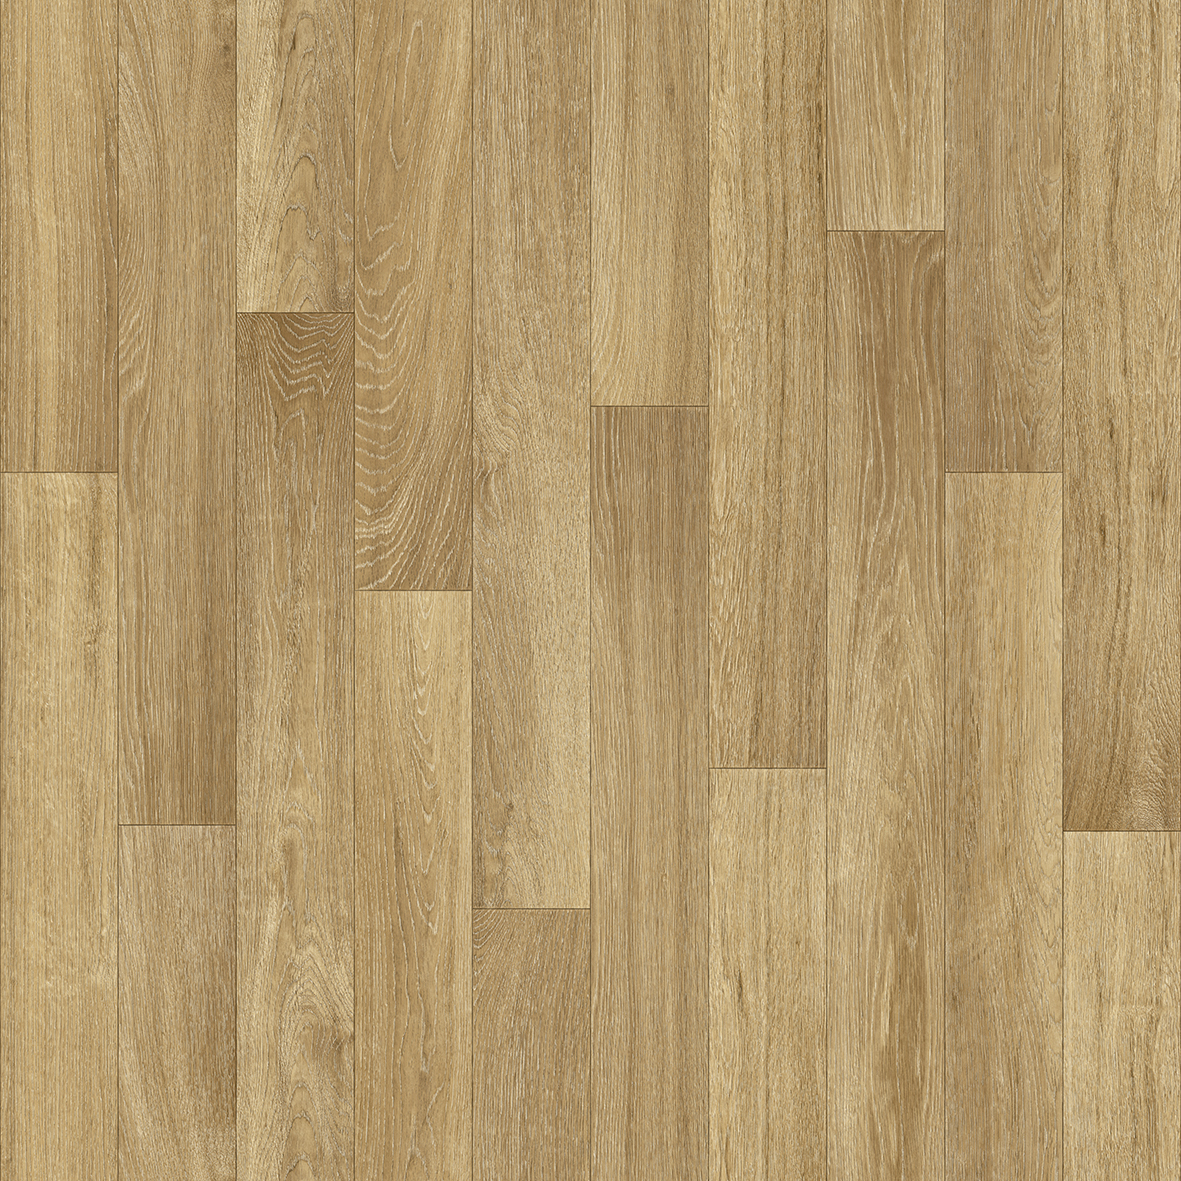 Oak Wood Premium - KOMS Event & Exhibition Flooring